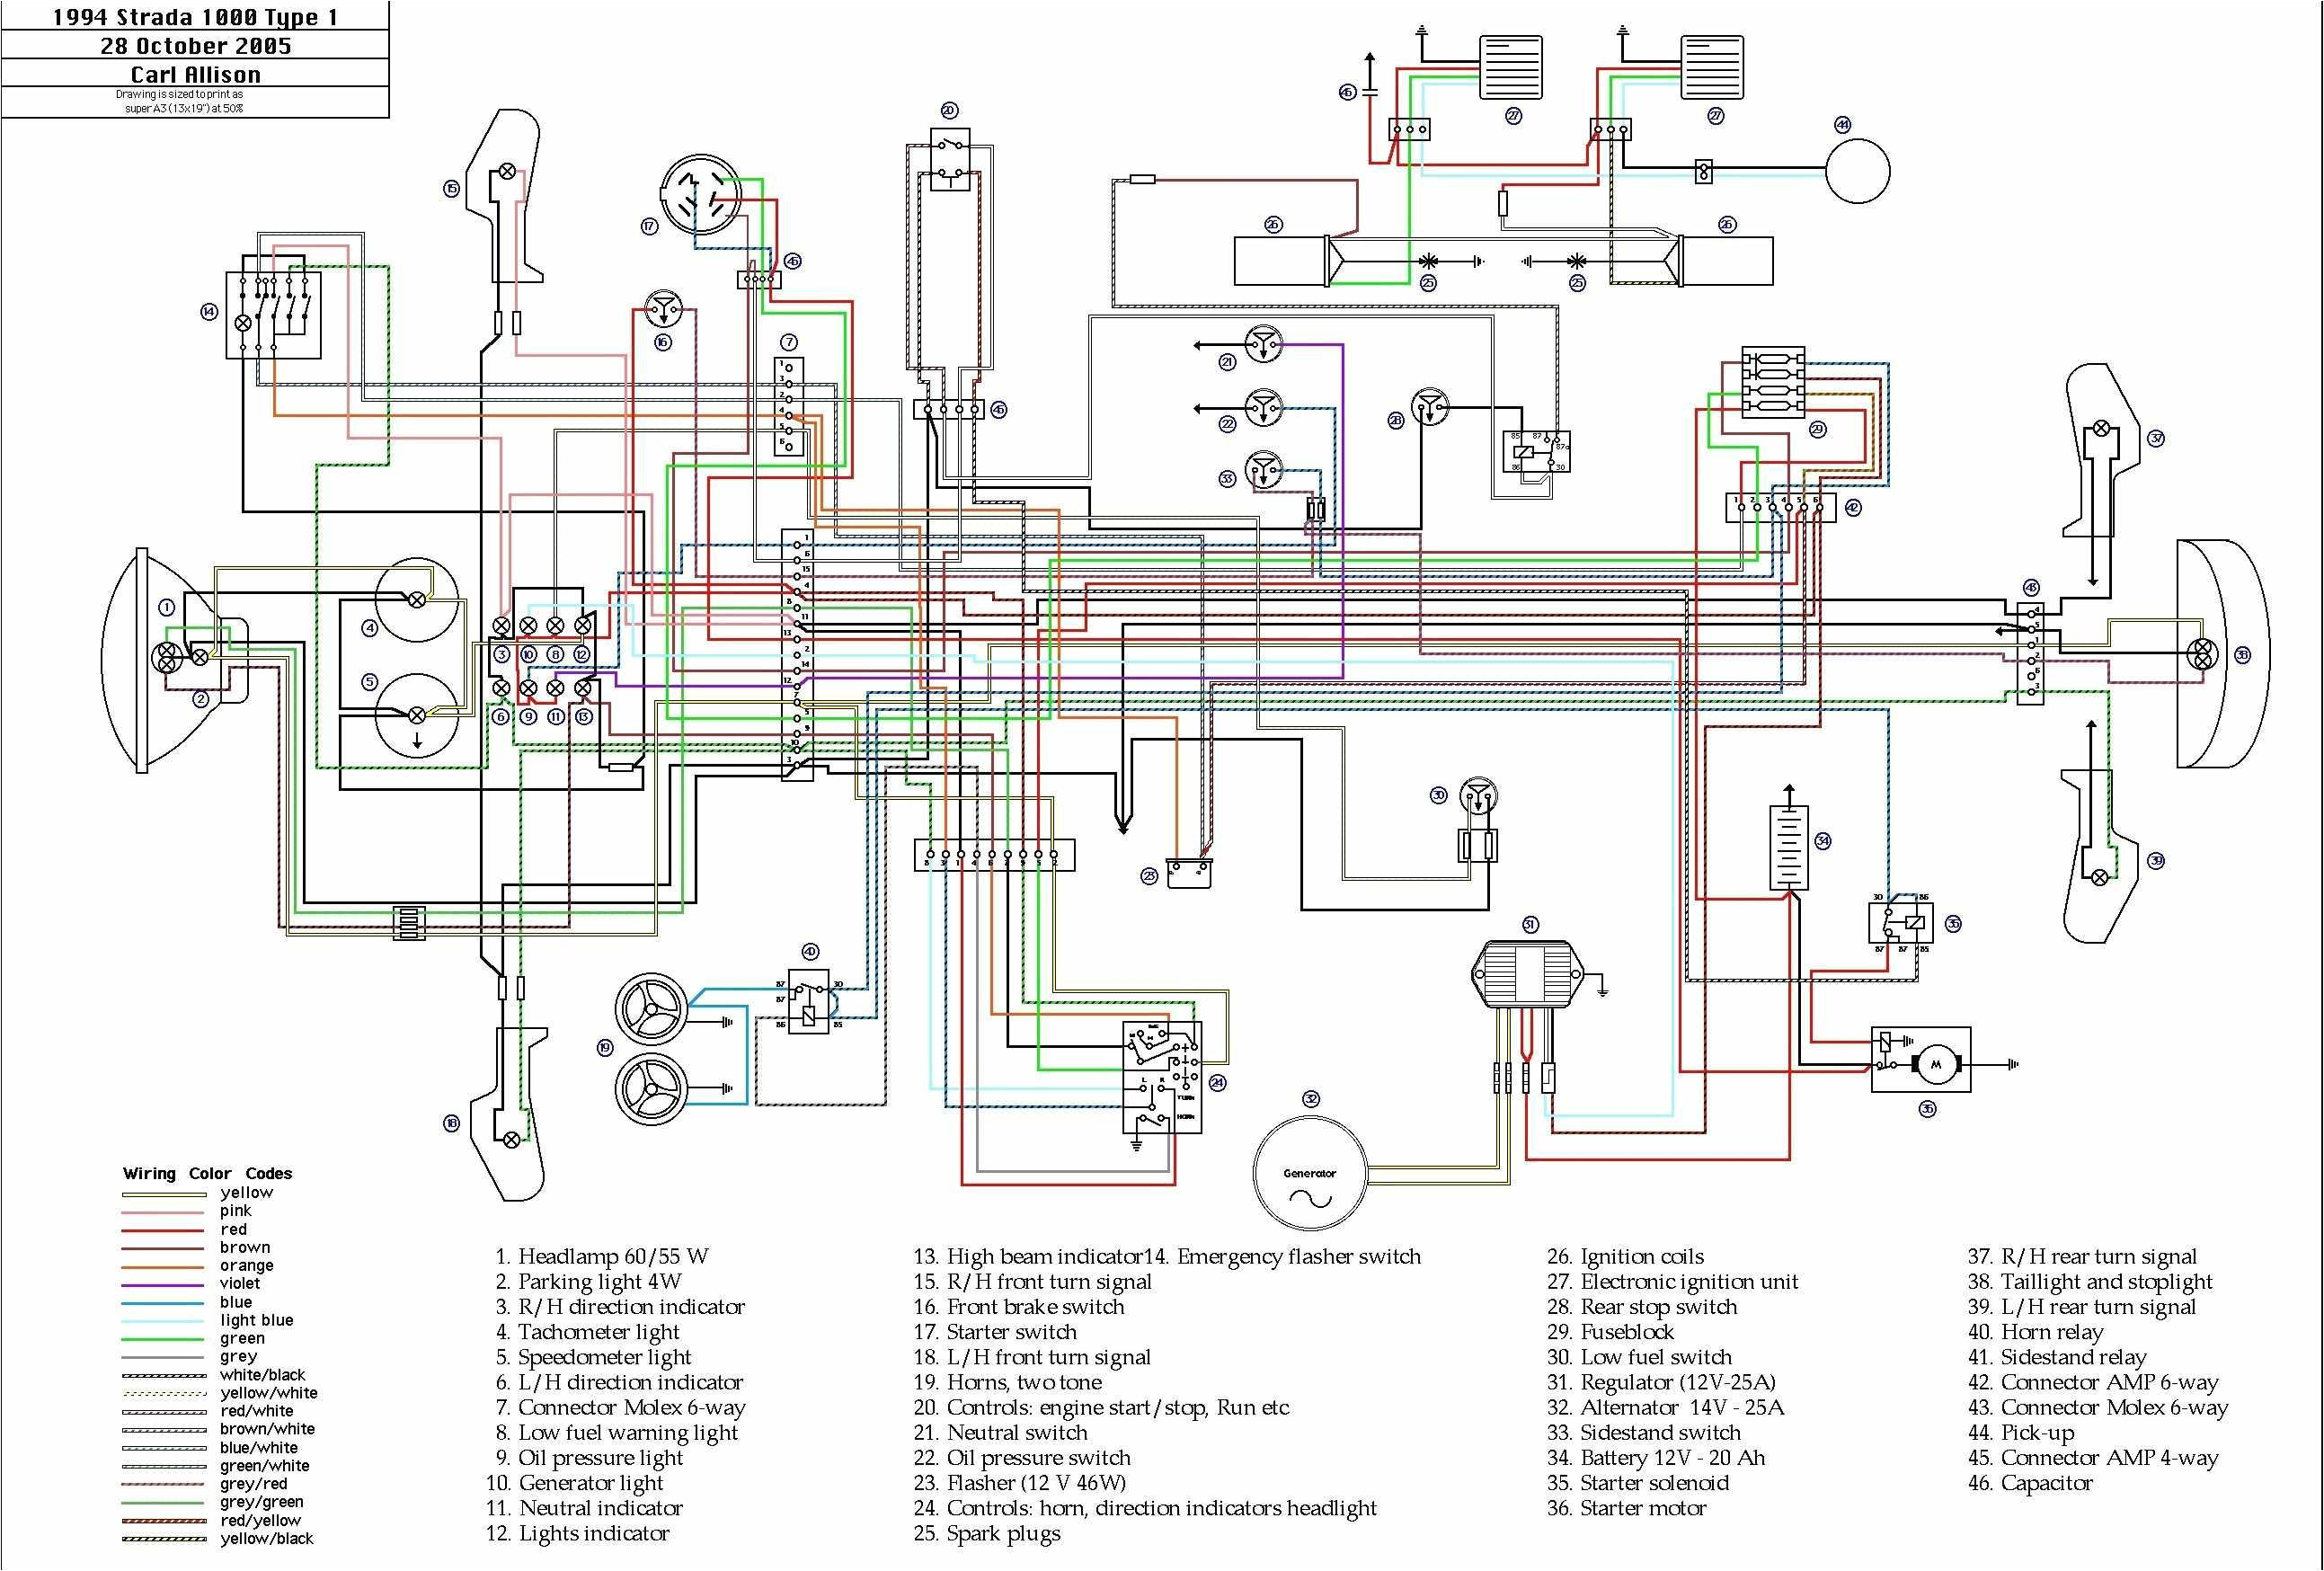 okin motor wiring diagram new mccoy miller ambulance wiring diagram of okin motor wiring diagram jpg